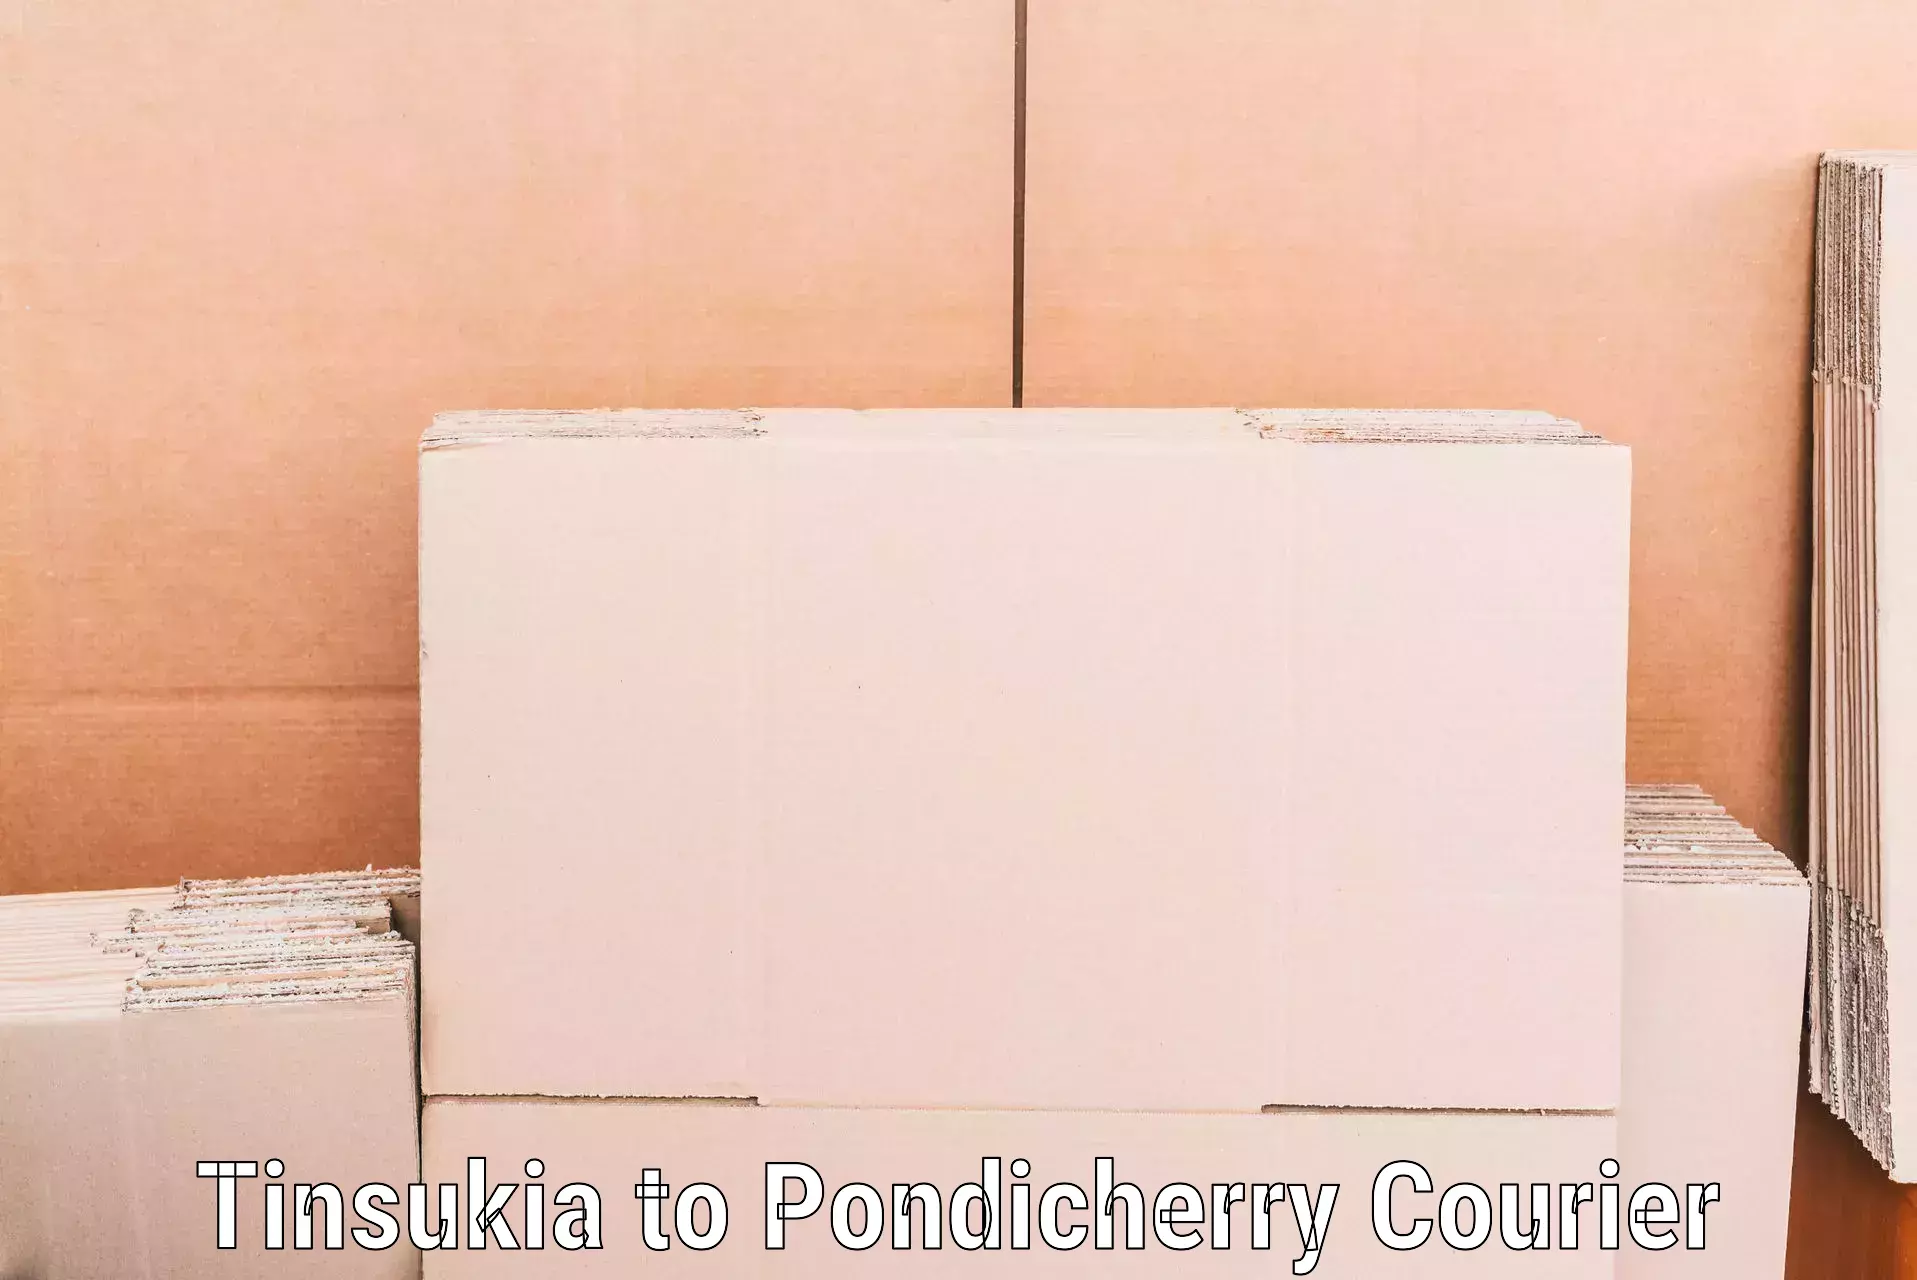 Stress-free household moving Tinsukia to Pondicherry